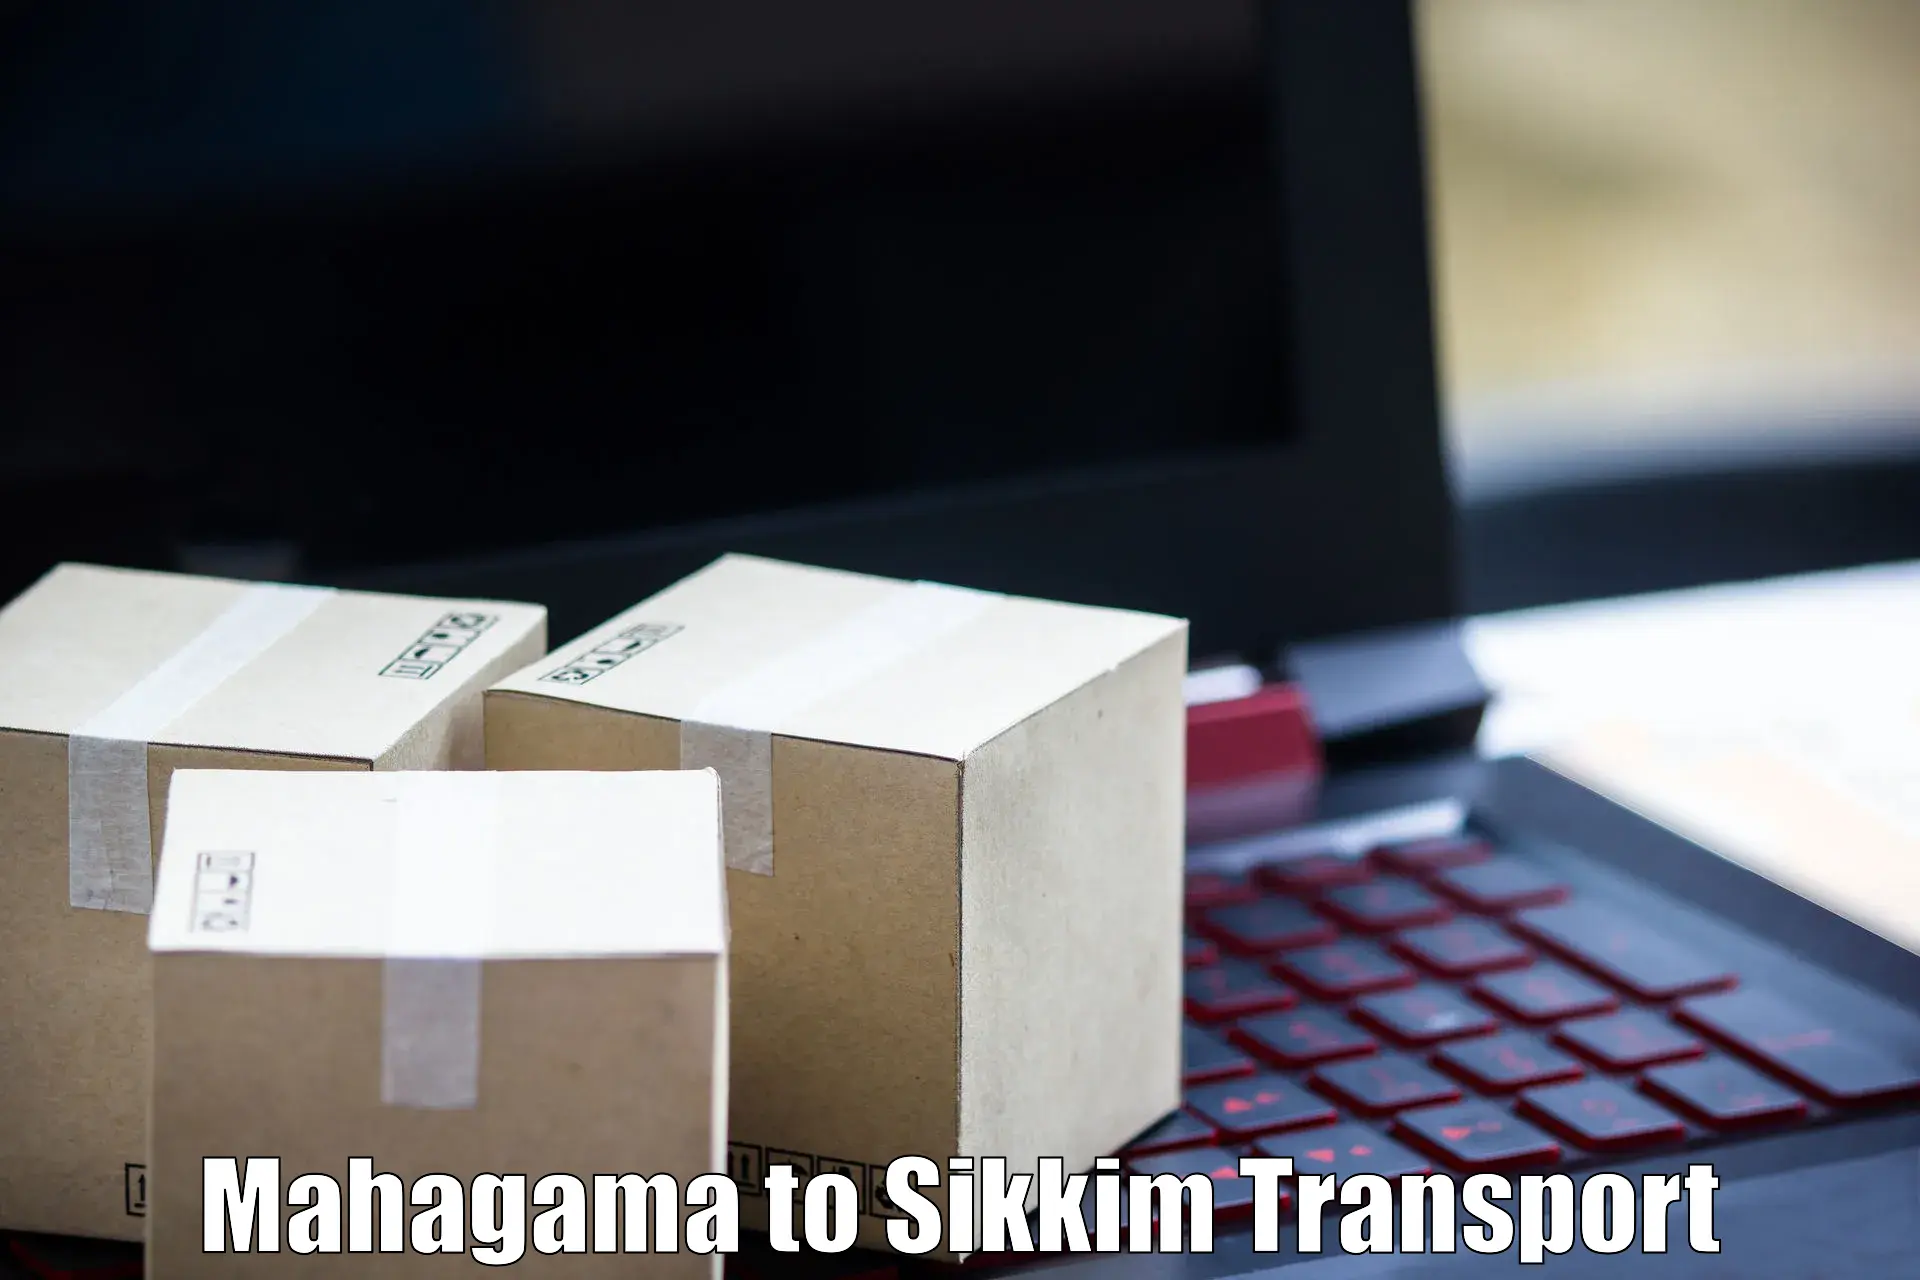 Daily transport service Mahagama to Mangan